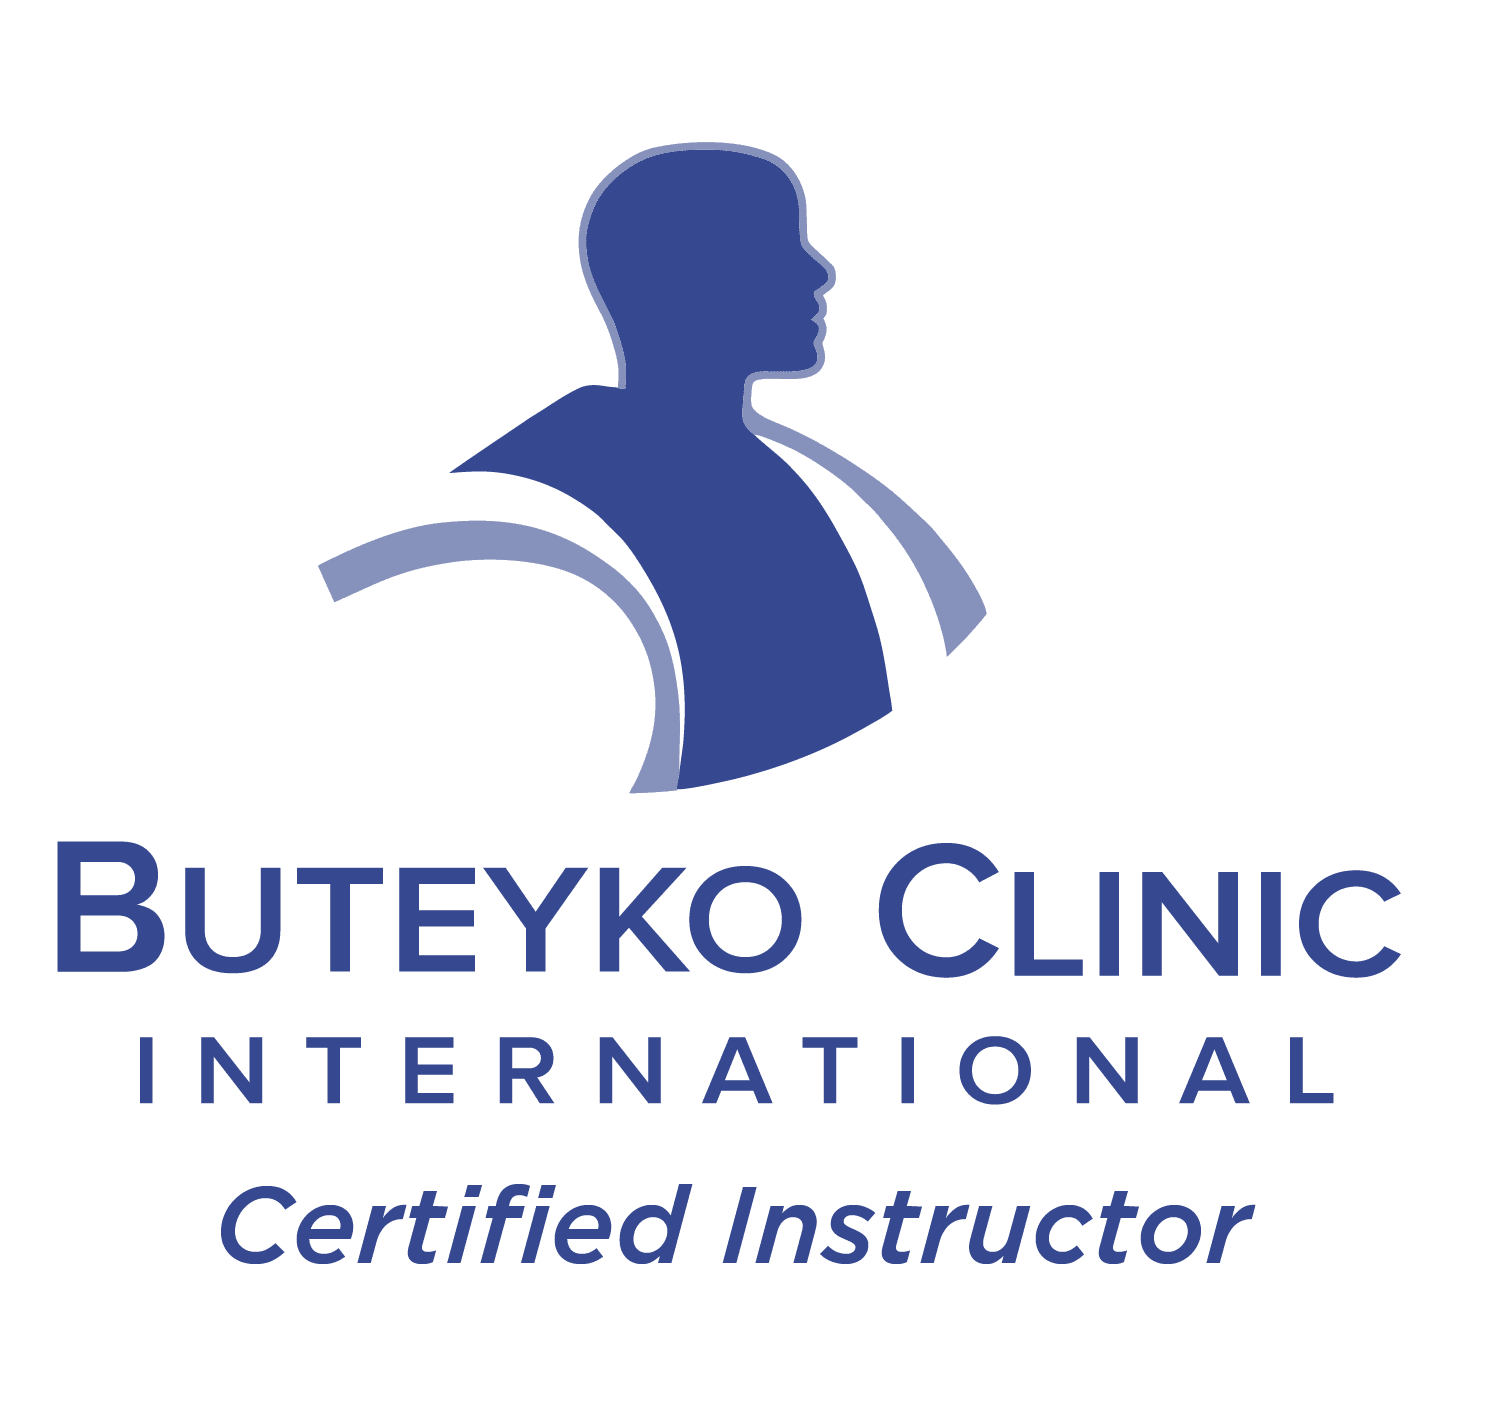 ButeykoClinic logo Certified Instructor 01